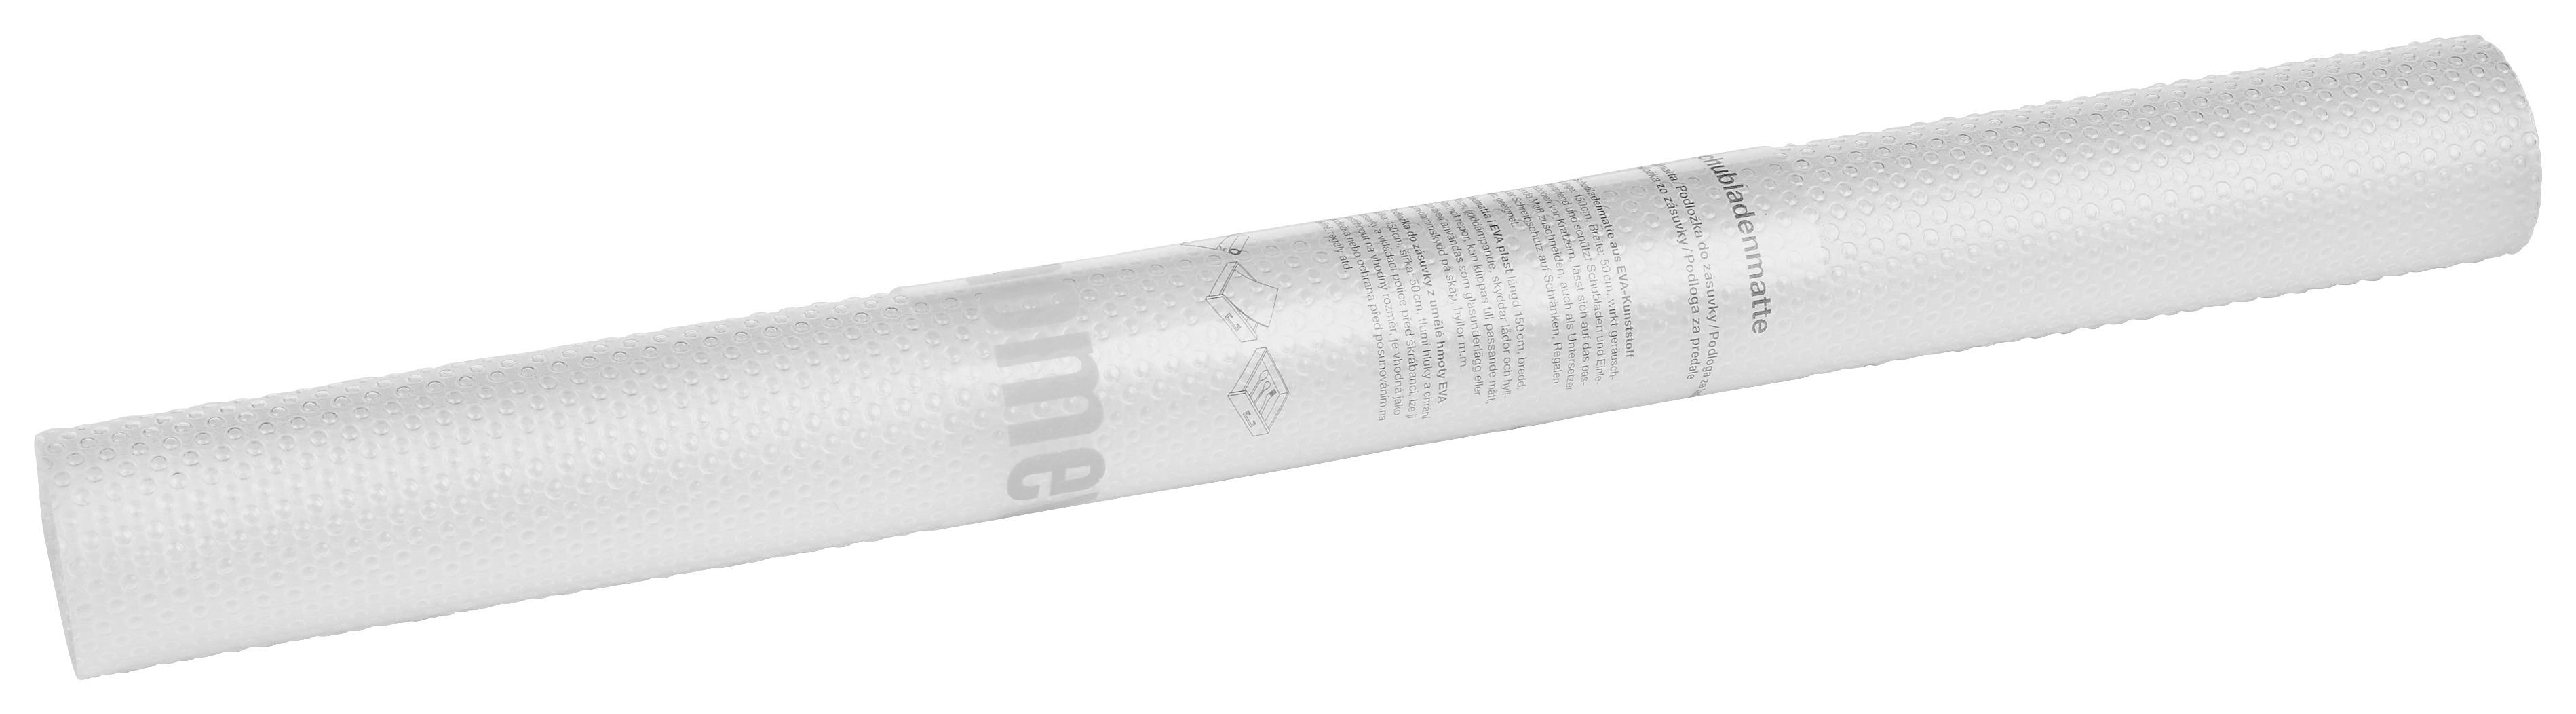 Schubladenmatte aus Kunststoff Larisa 50x150 cm - Klar, KONVENTIONELL, Kunststoff (50/150cm) - Homezone